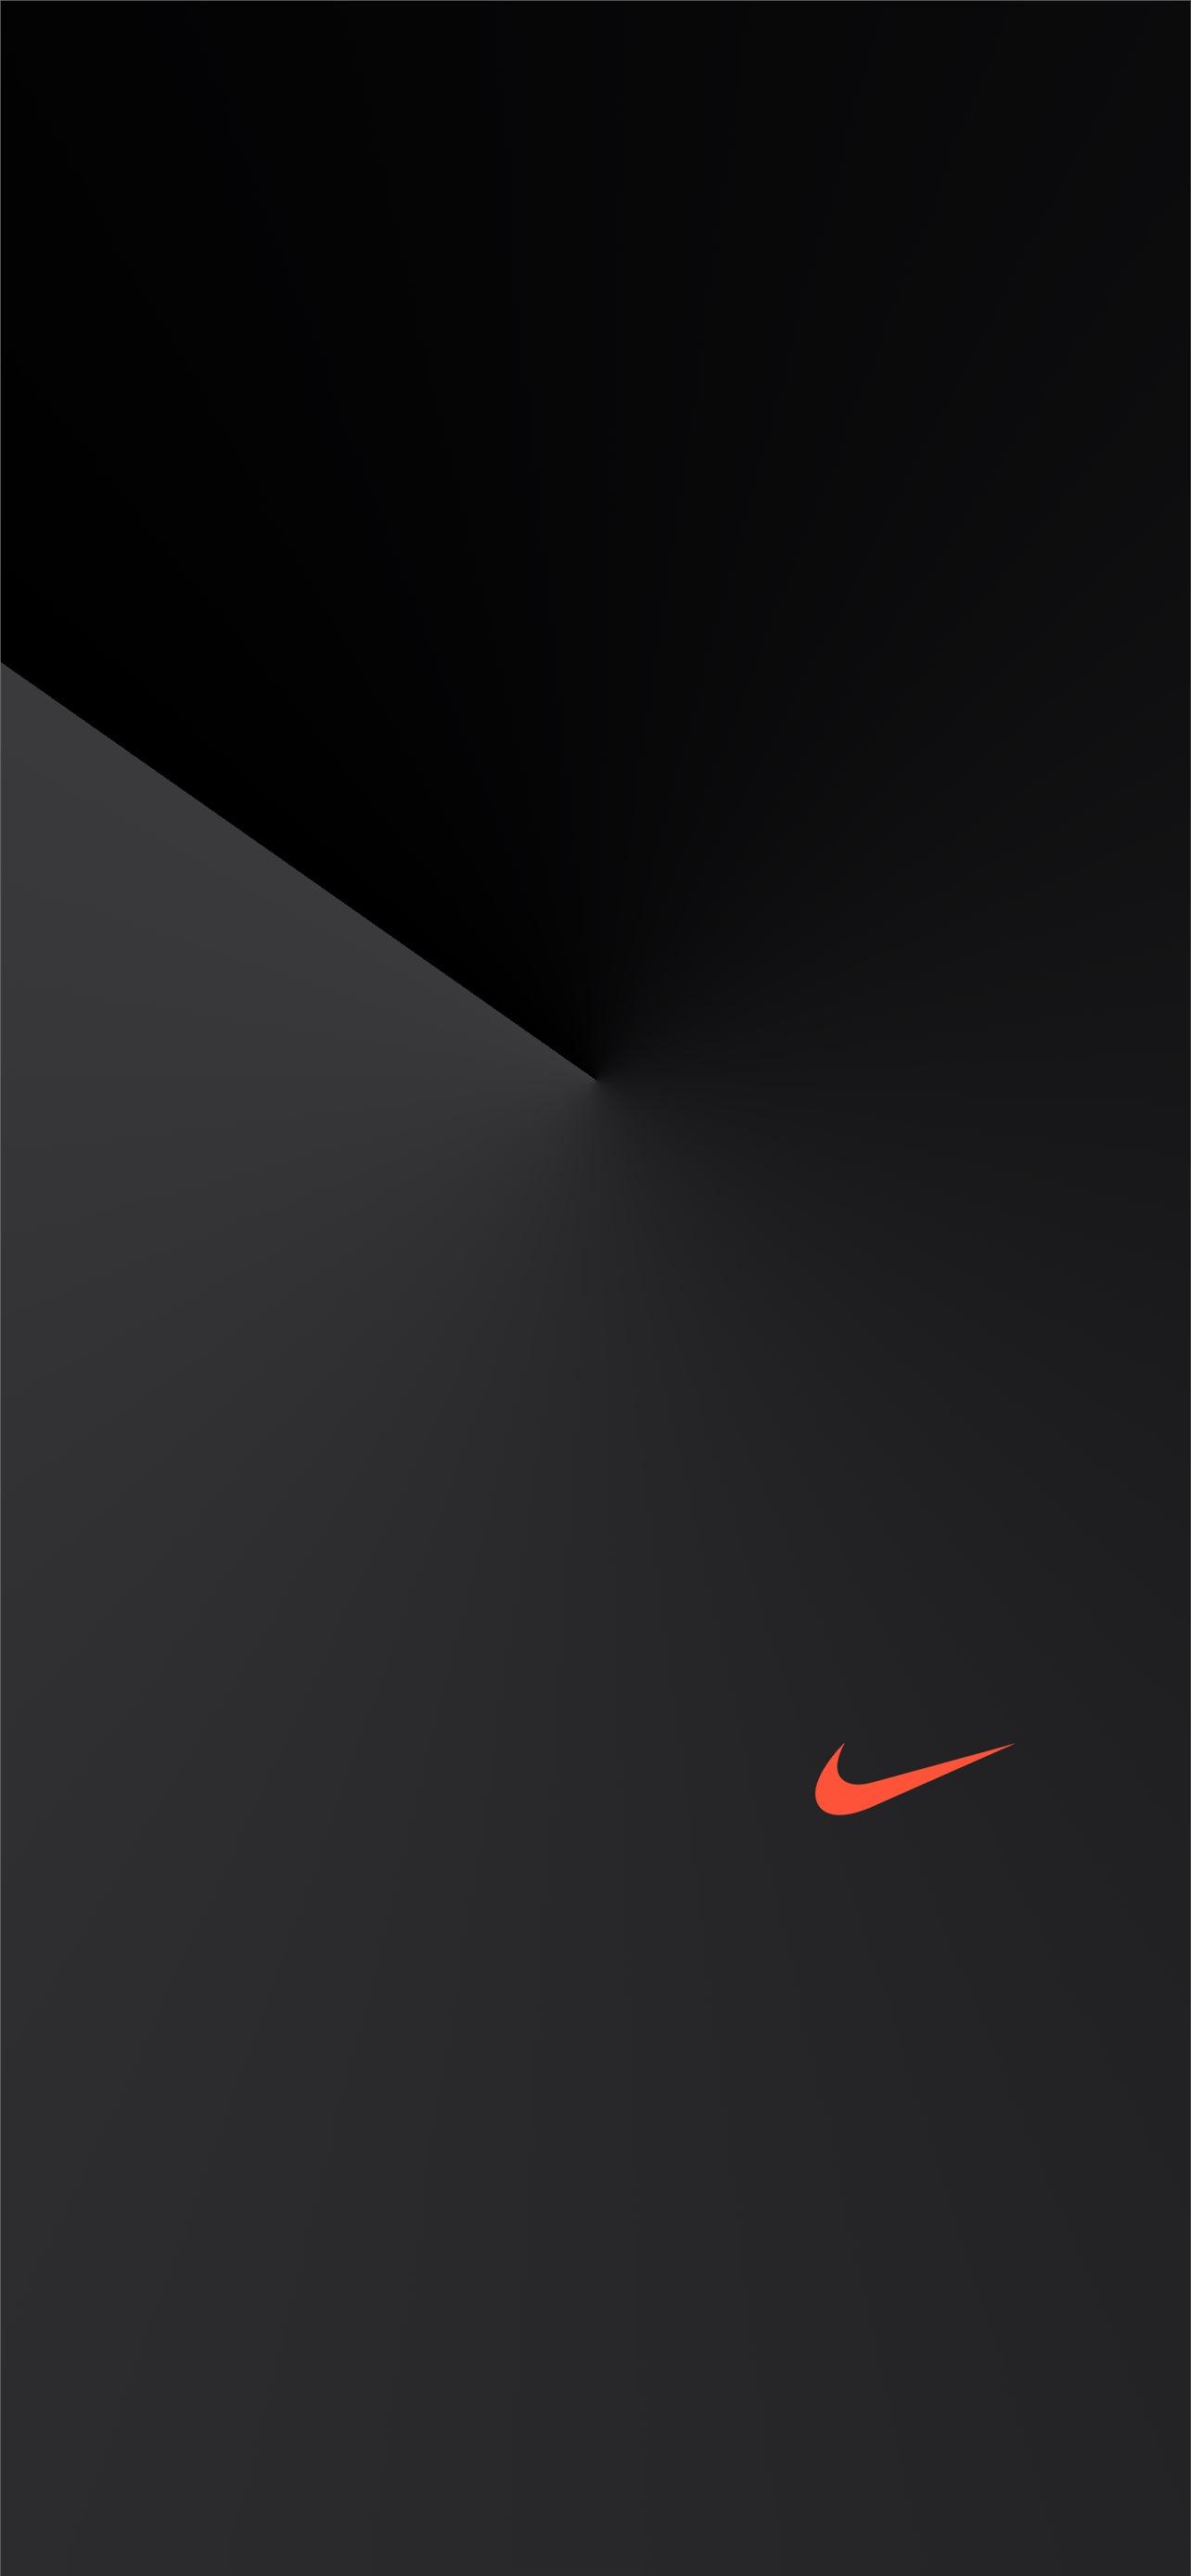 Nike Dark iPhone Wallpaper